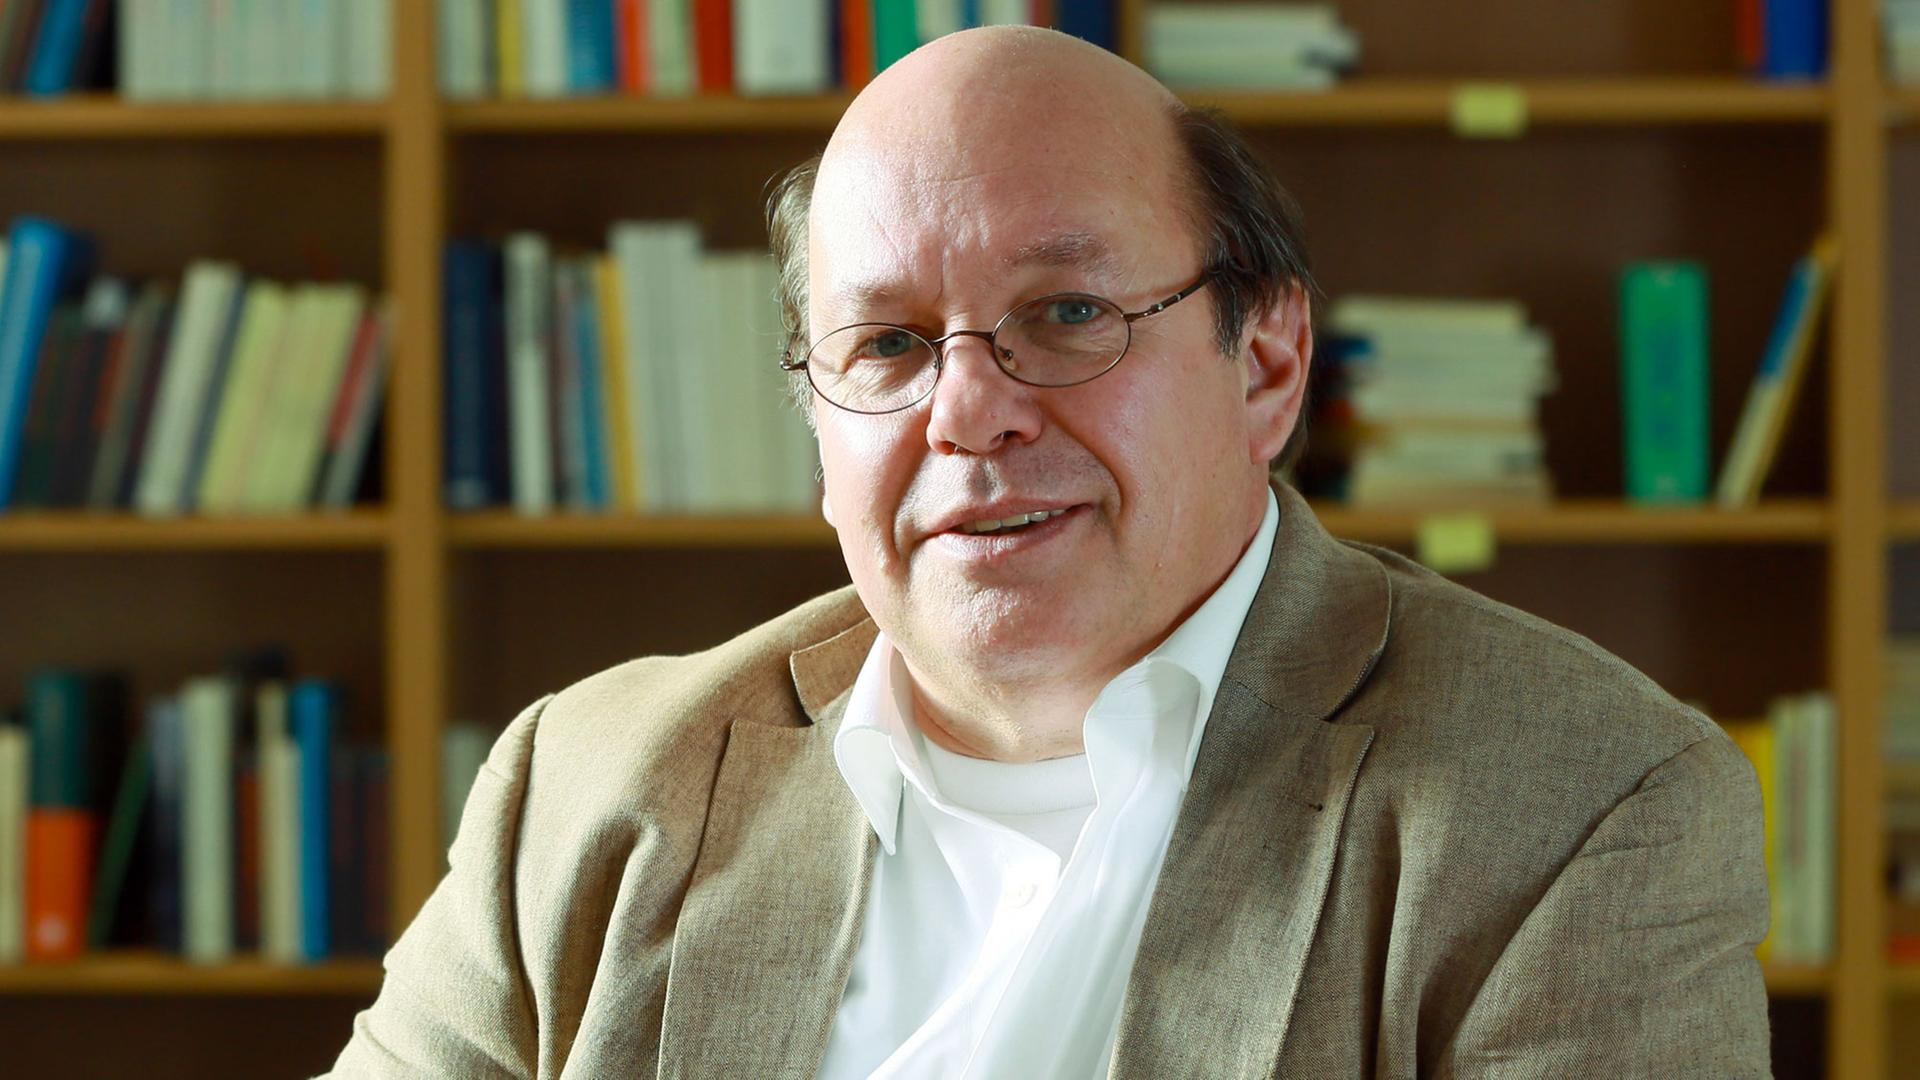 Rafael Behr, Kriminologe und Soziologieprofessor an der Hochschule der Polizei Hamburg, blickt am 17.10.2012 in seinem Büro in Hamburg in die Kamera.